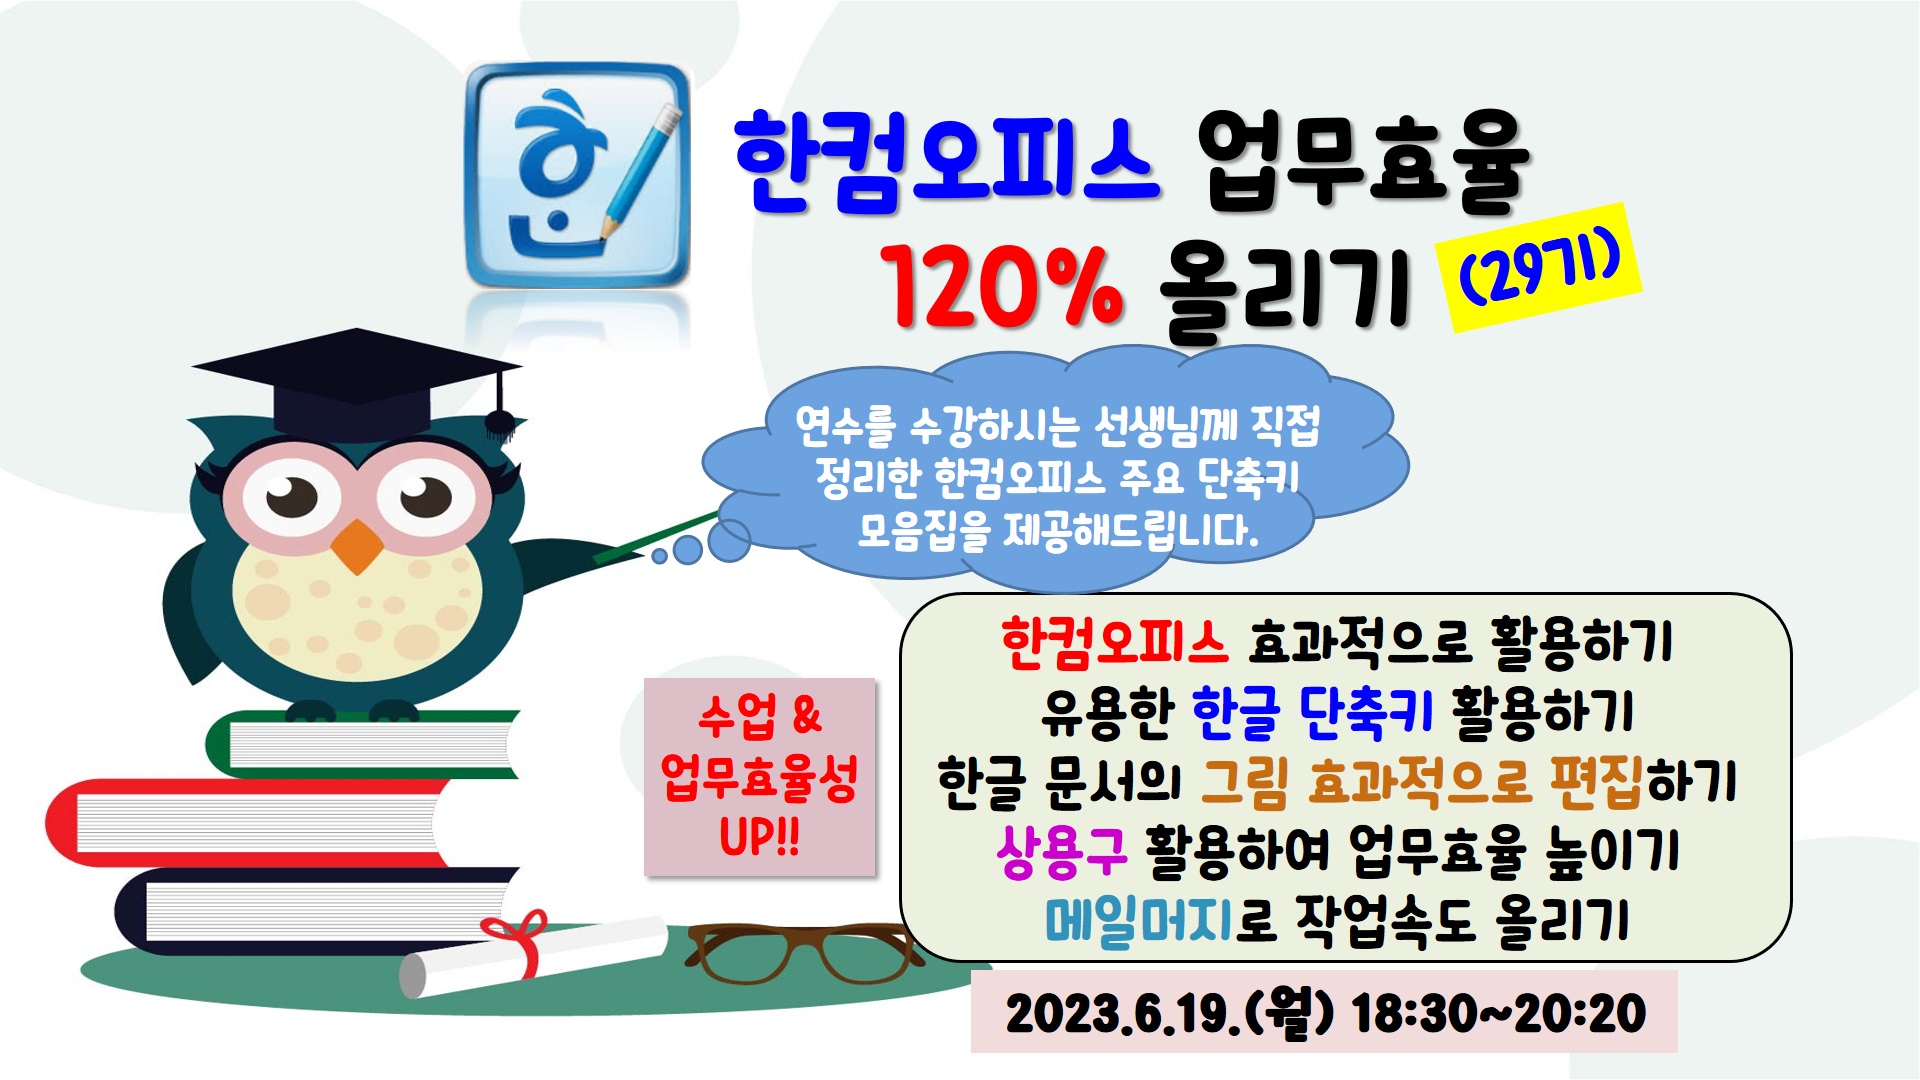 한컴오피스 업무효율 120% 올리기(29기)